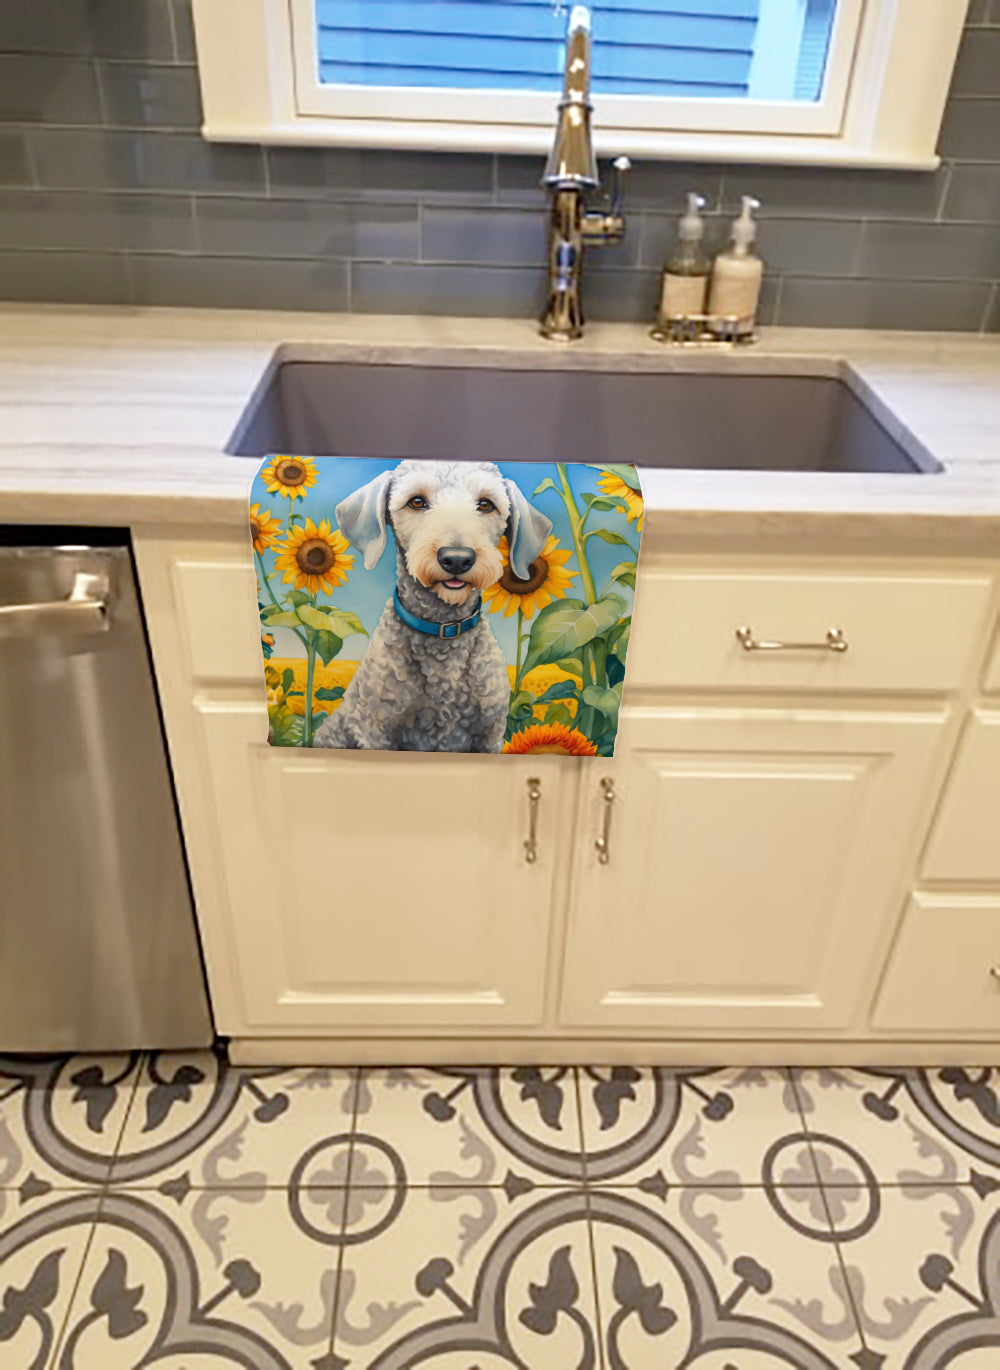 Buy this Bedlington Terrier in Sunflowers Kitchen Towel